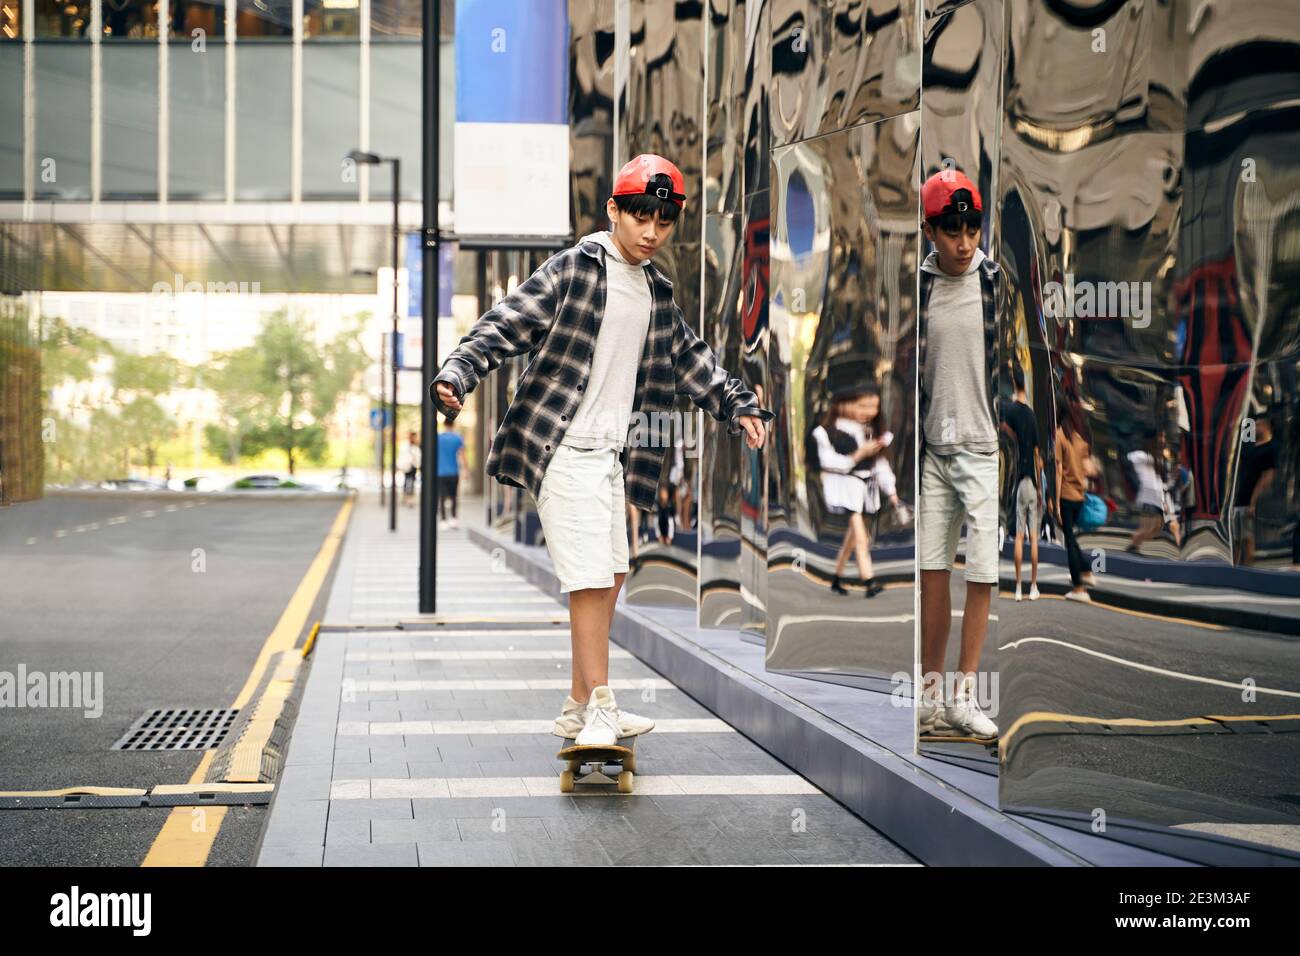 Teenager asiatische Kind Skateboarding im Freien auf der Straße Stockfoto